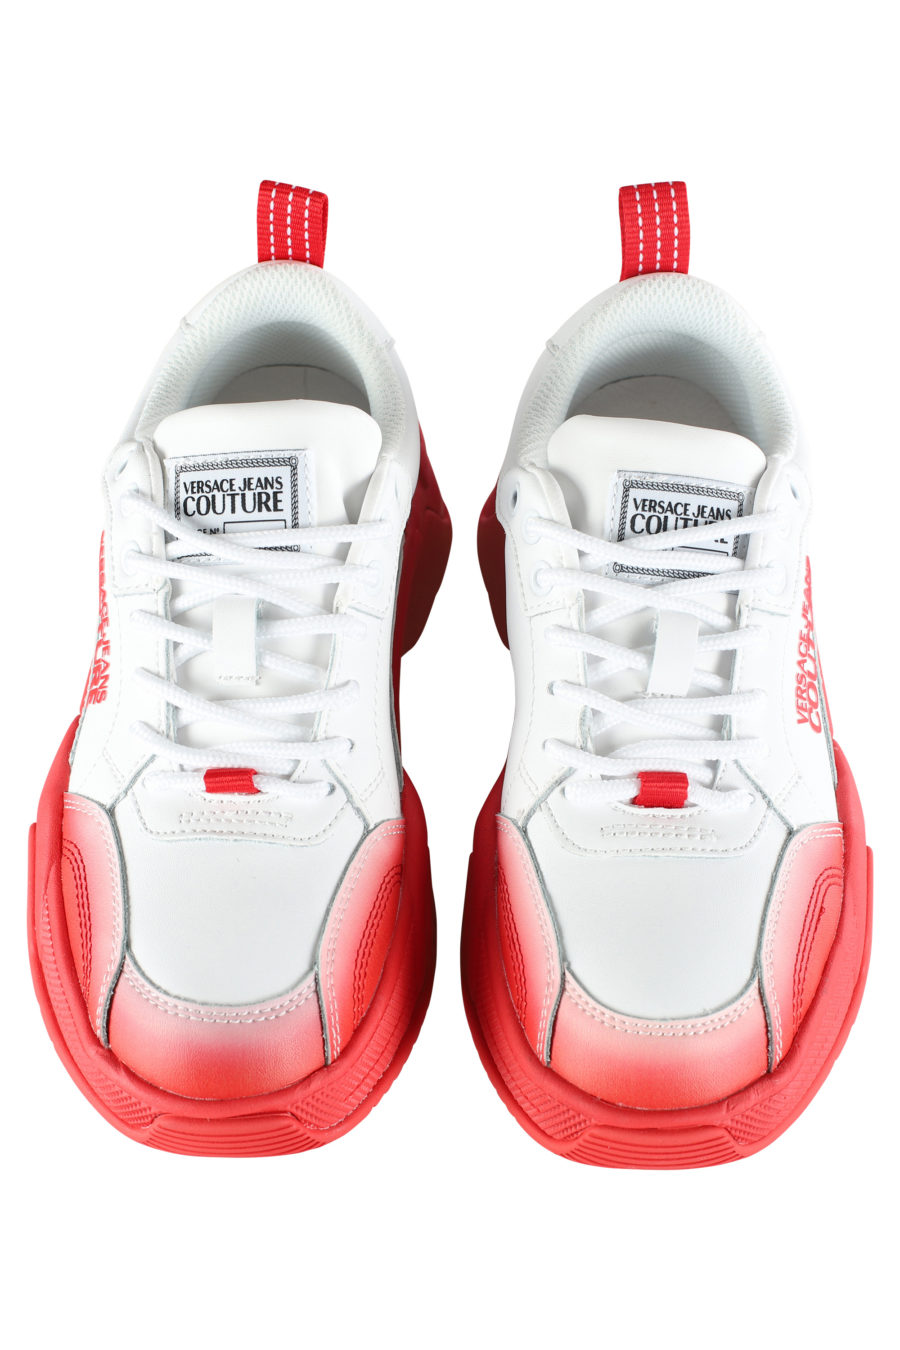 Zapatillas blancas con degrade rojo "stargaze" - IMG 5348